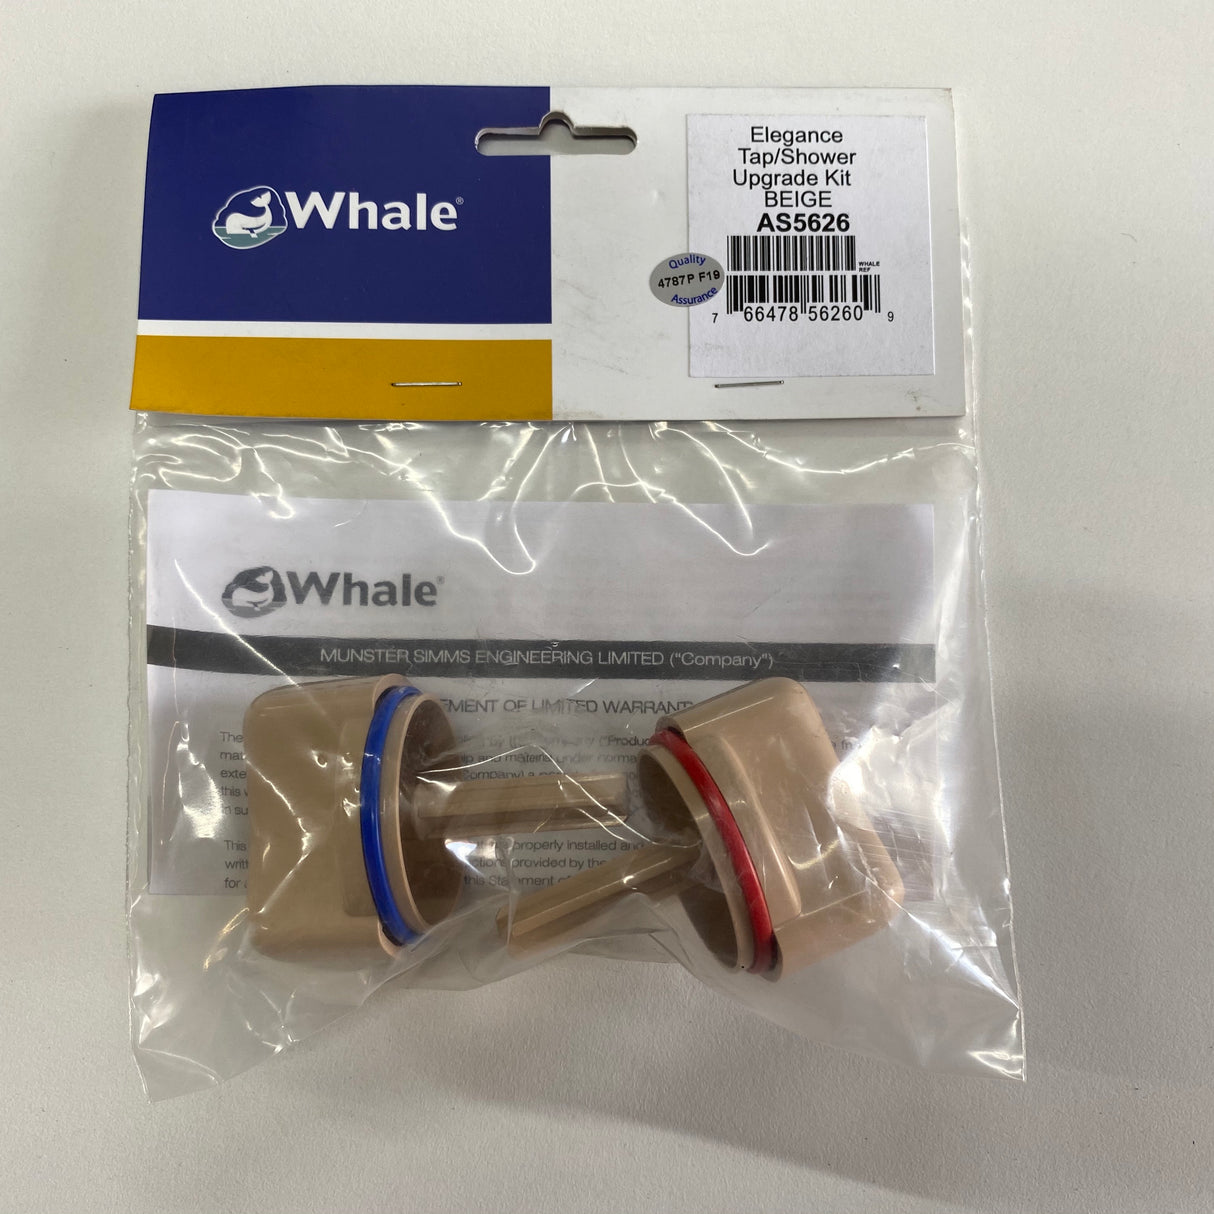 Whale Elegance Tap Spindle & Knob Upgrade Kit Beige